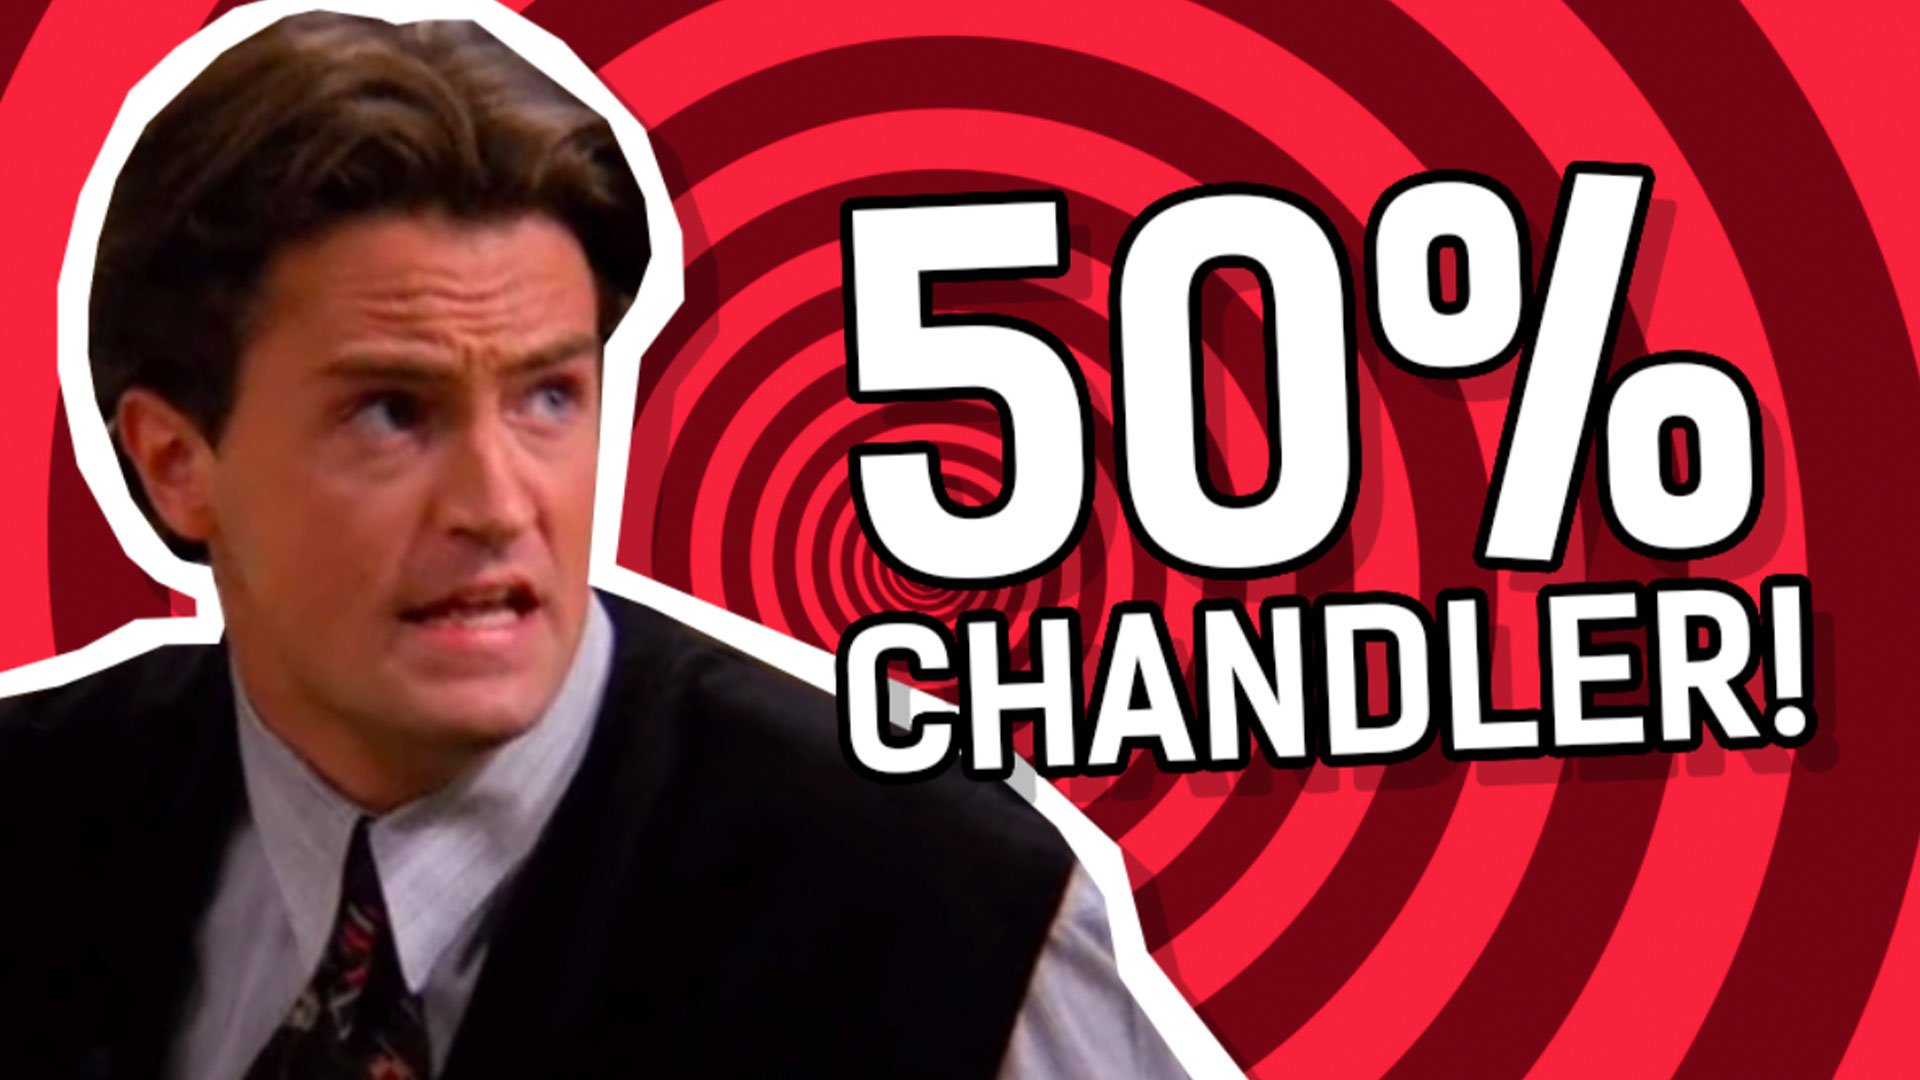 Result: 50% Chandler